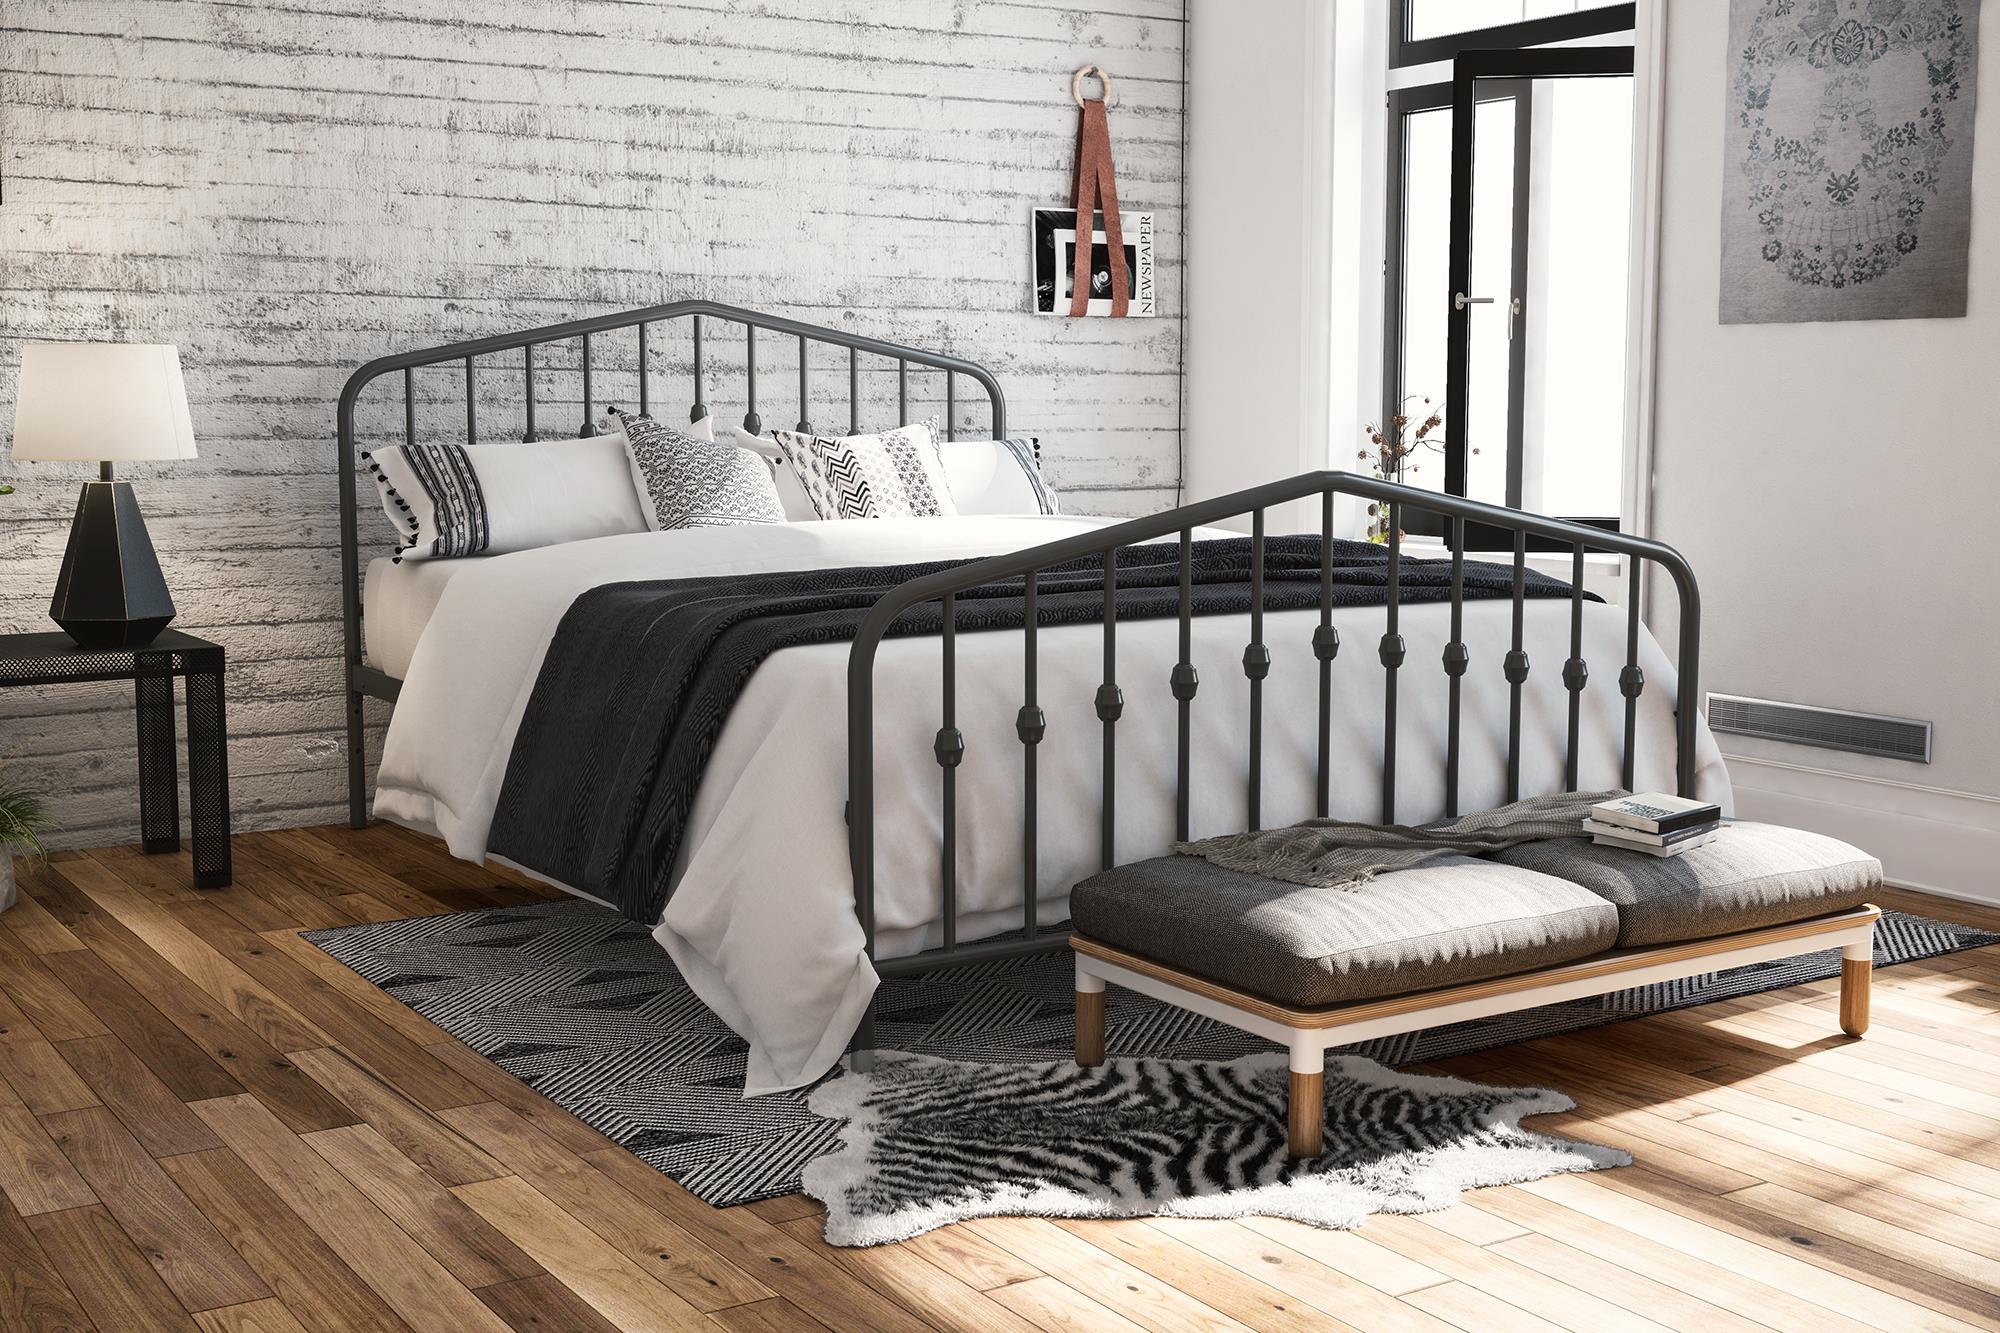 Novogratz Bushwick Metal Bed in Gray, Queen Size - Walmart.com